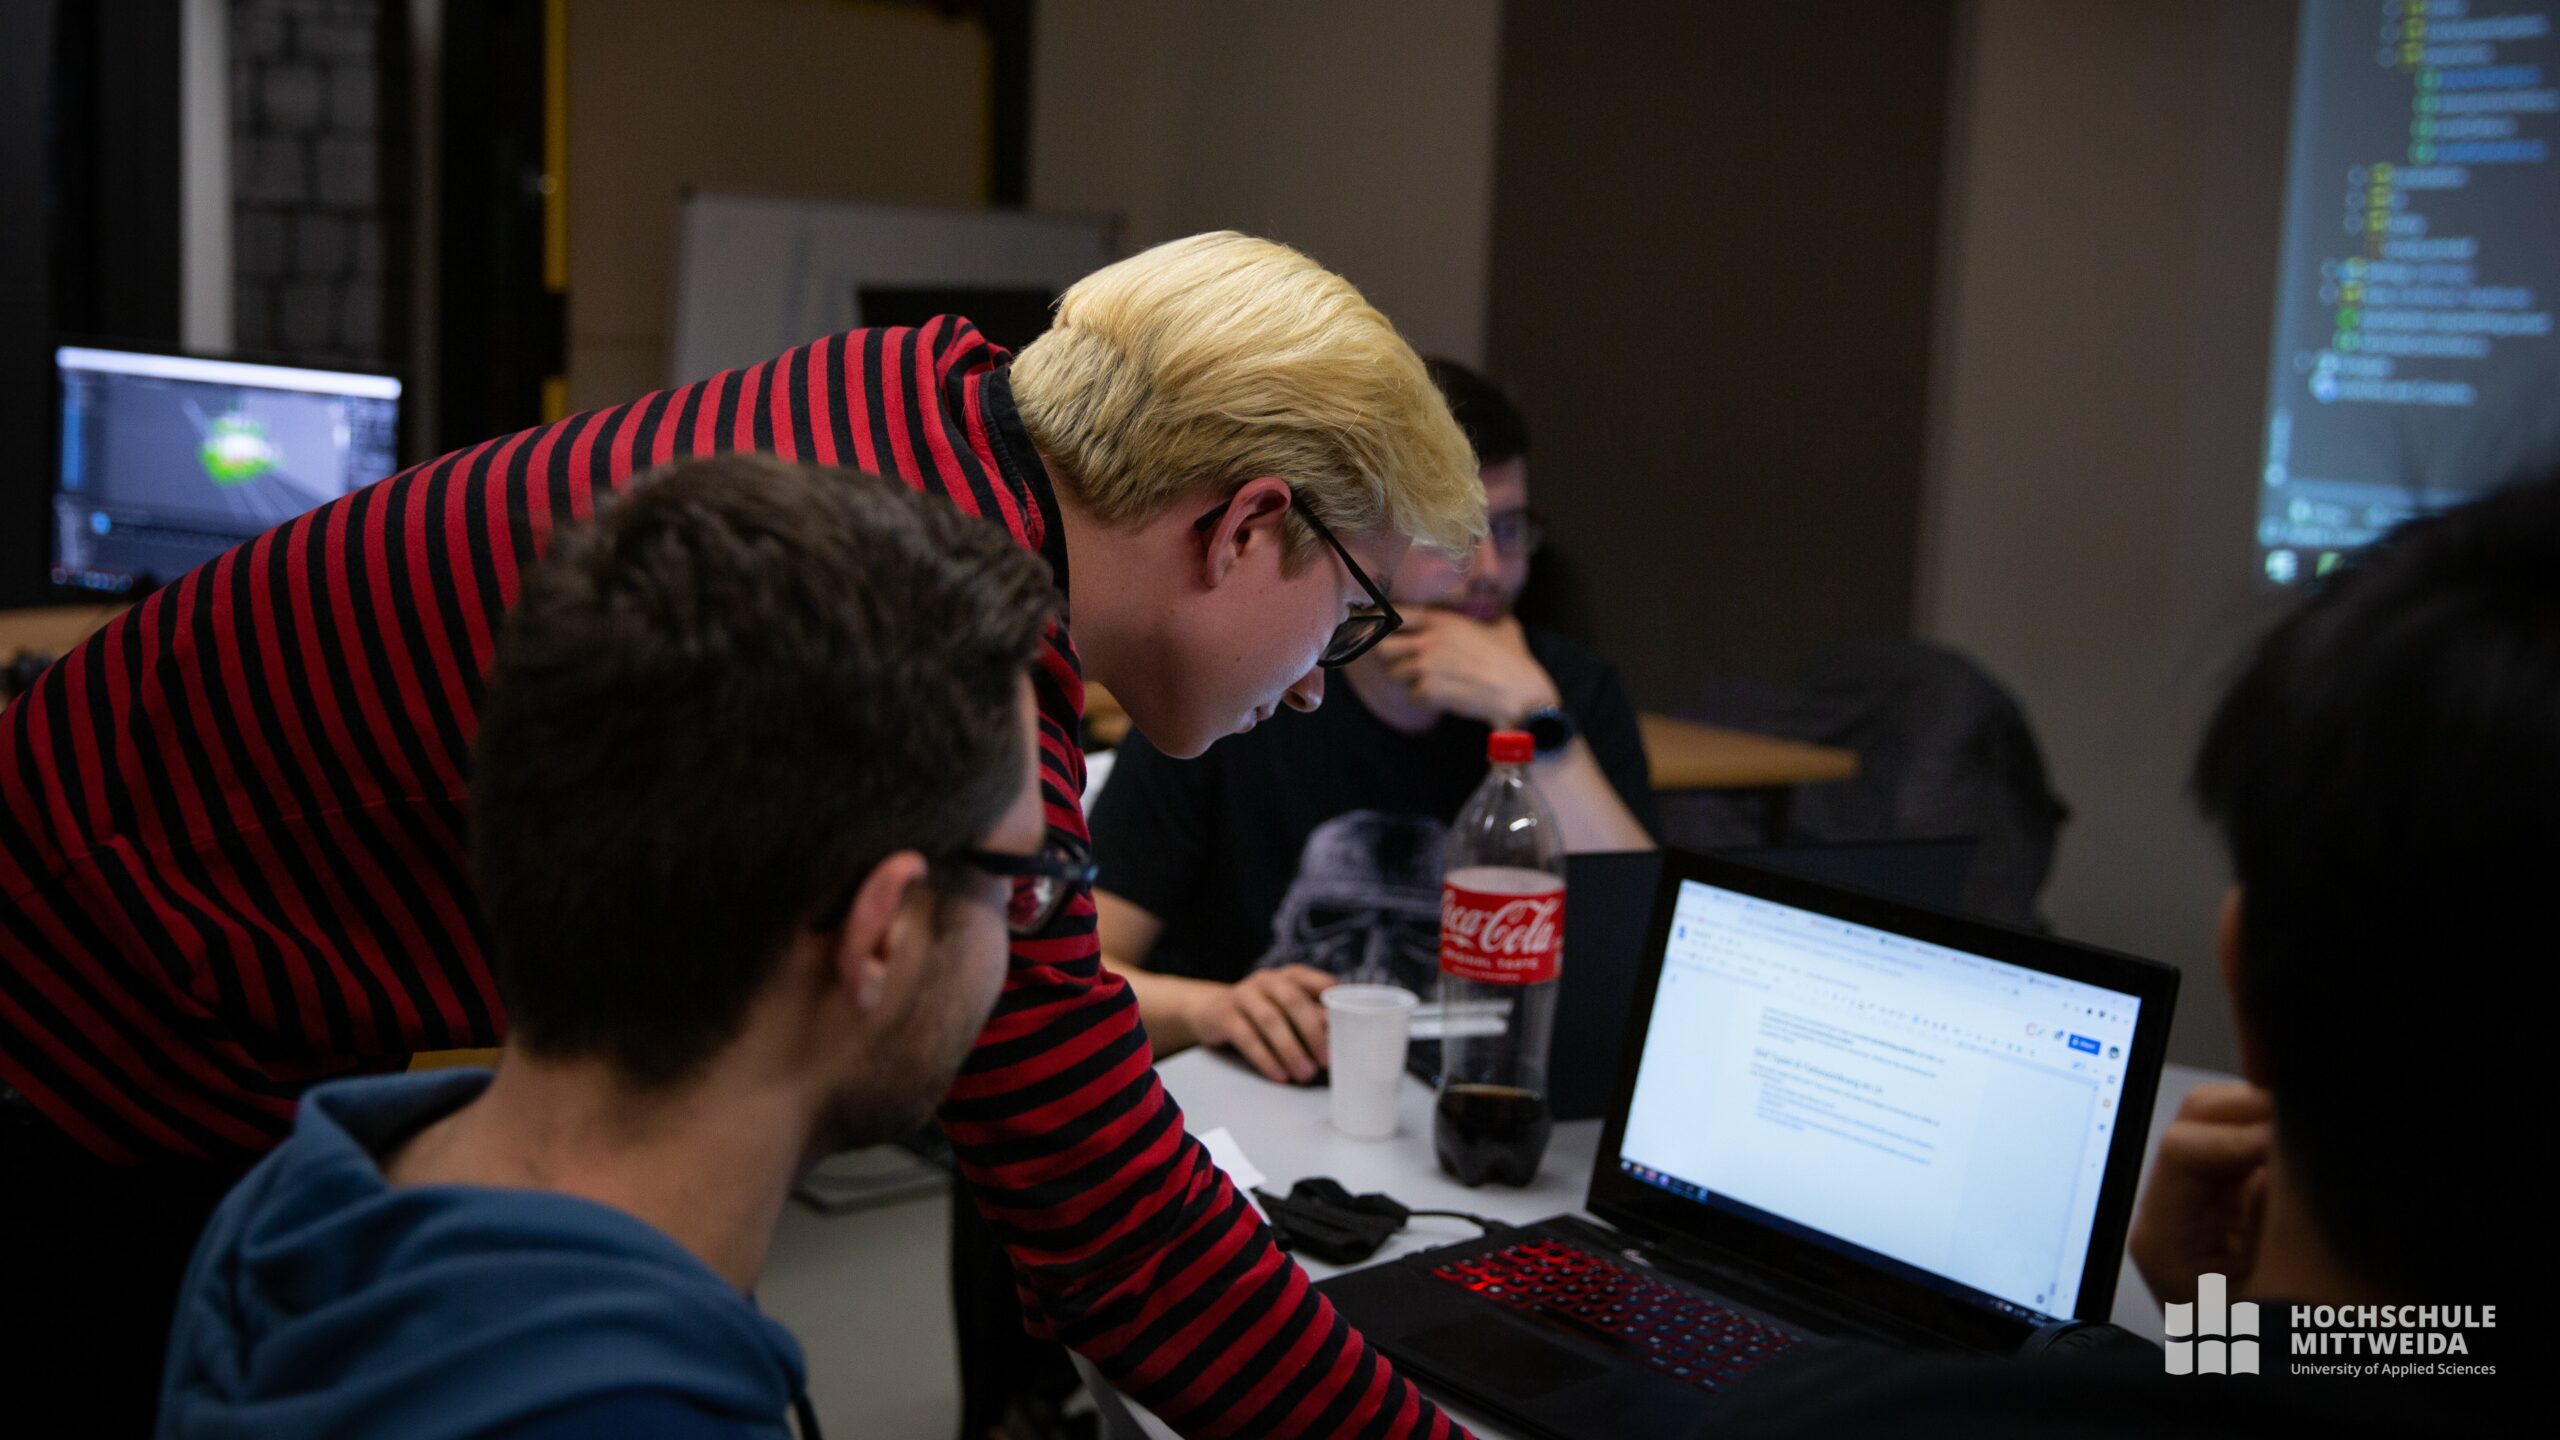 Drei Männer sitzen an einem Tisch, ein Mann im rotgestreiften Shirt arbeitet am Laptop.